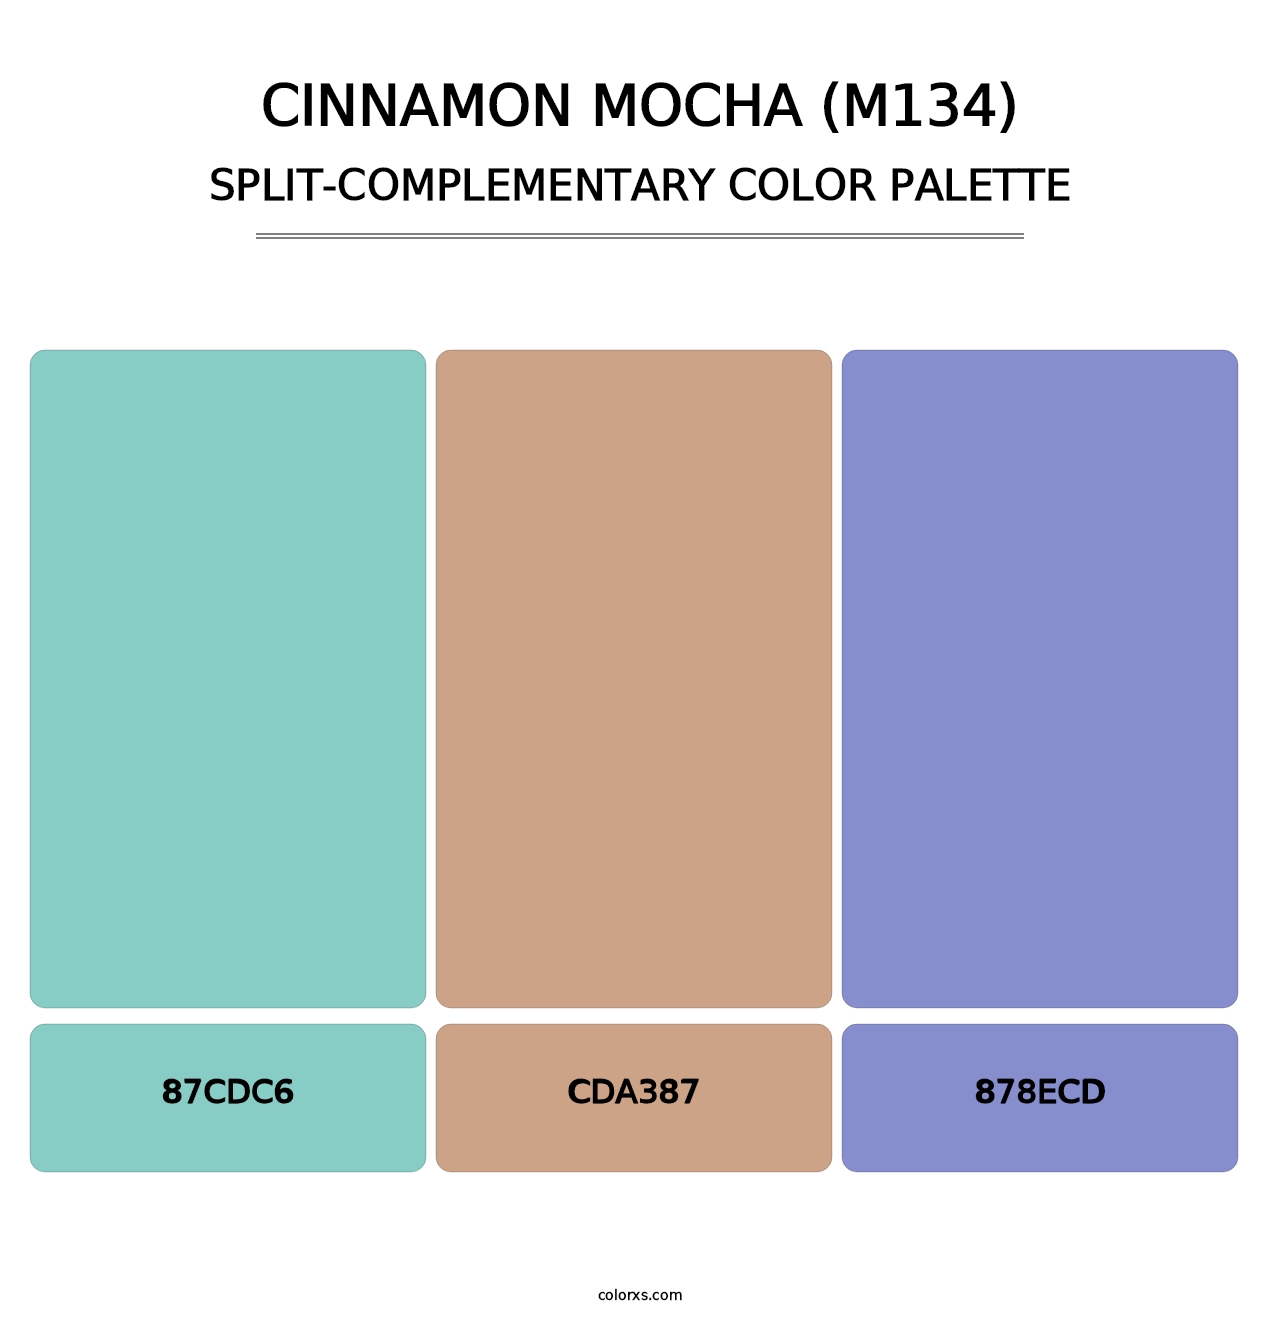 Cinnamon Mocha (M134) - Split-Complementary Color Palette